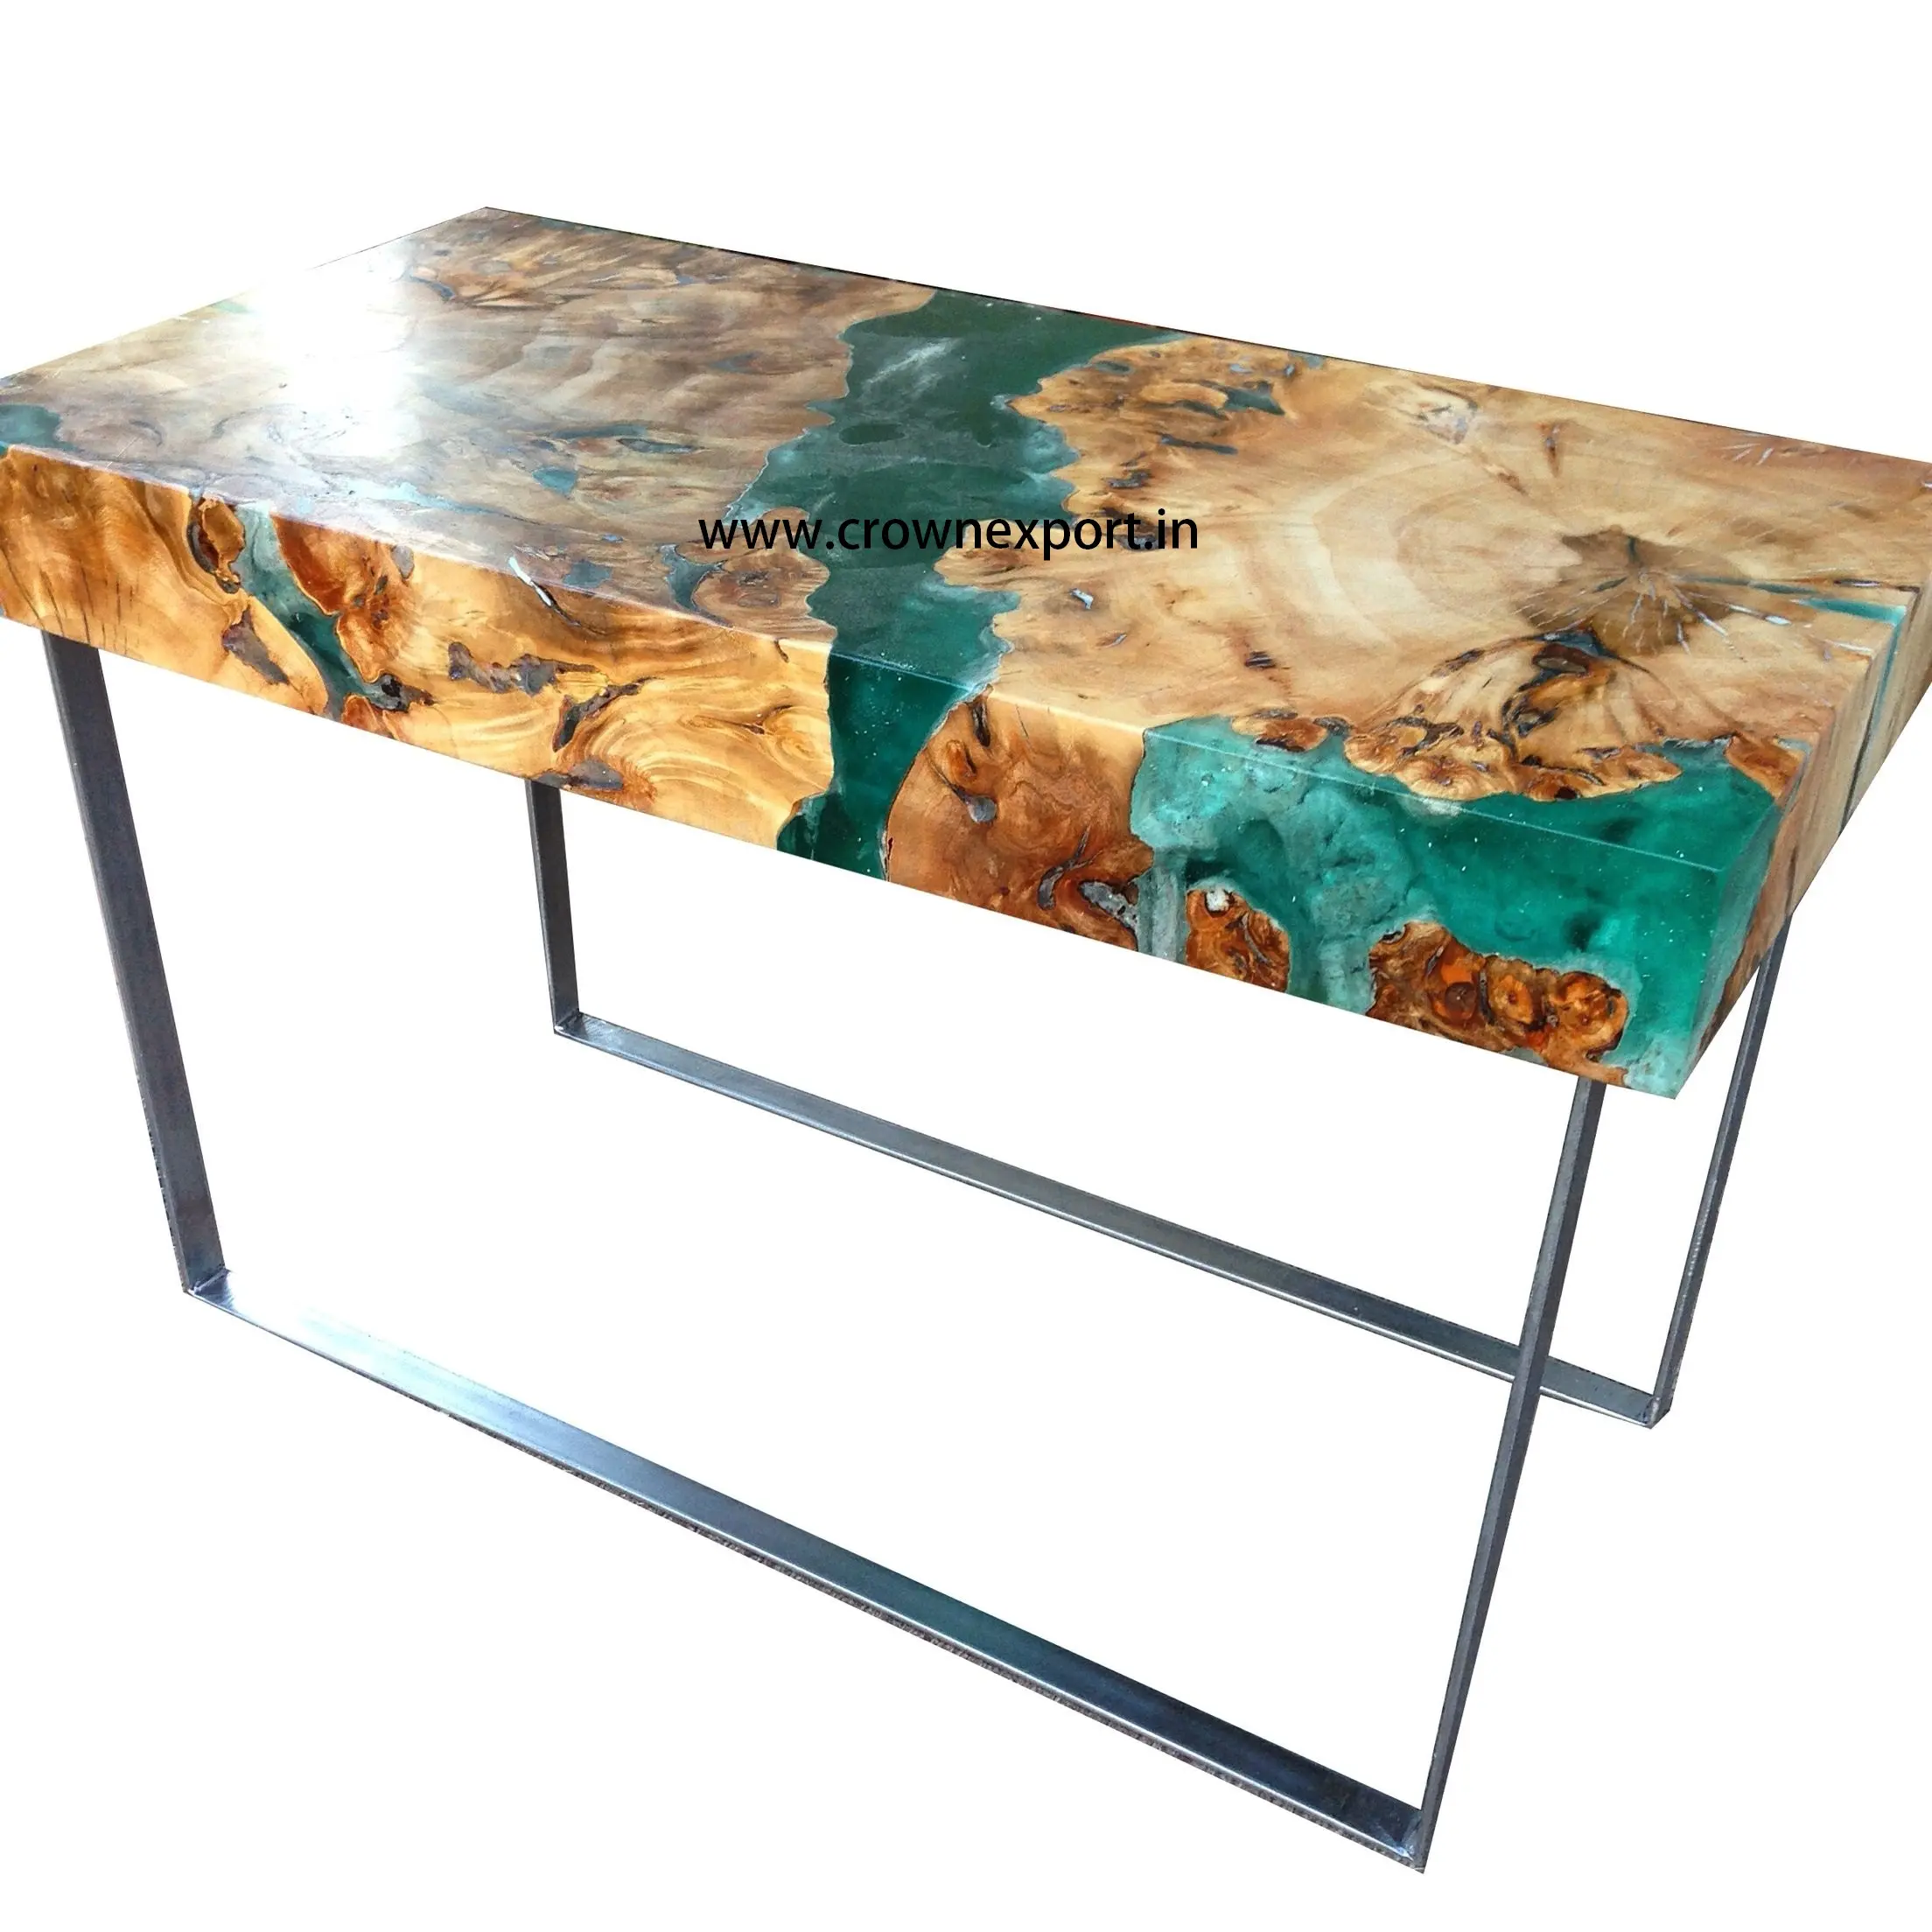 Table à manger en résine époxy, en bois massif, cristal, transparent, couleur noire et naturelle, meilleurs meubles, décoration moderne et populaire